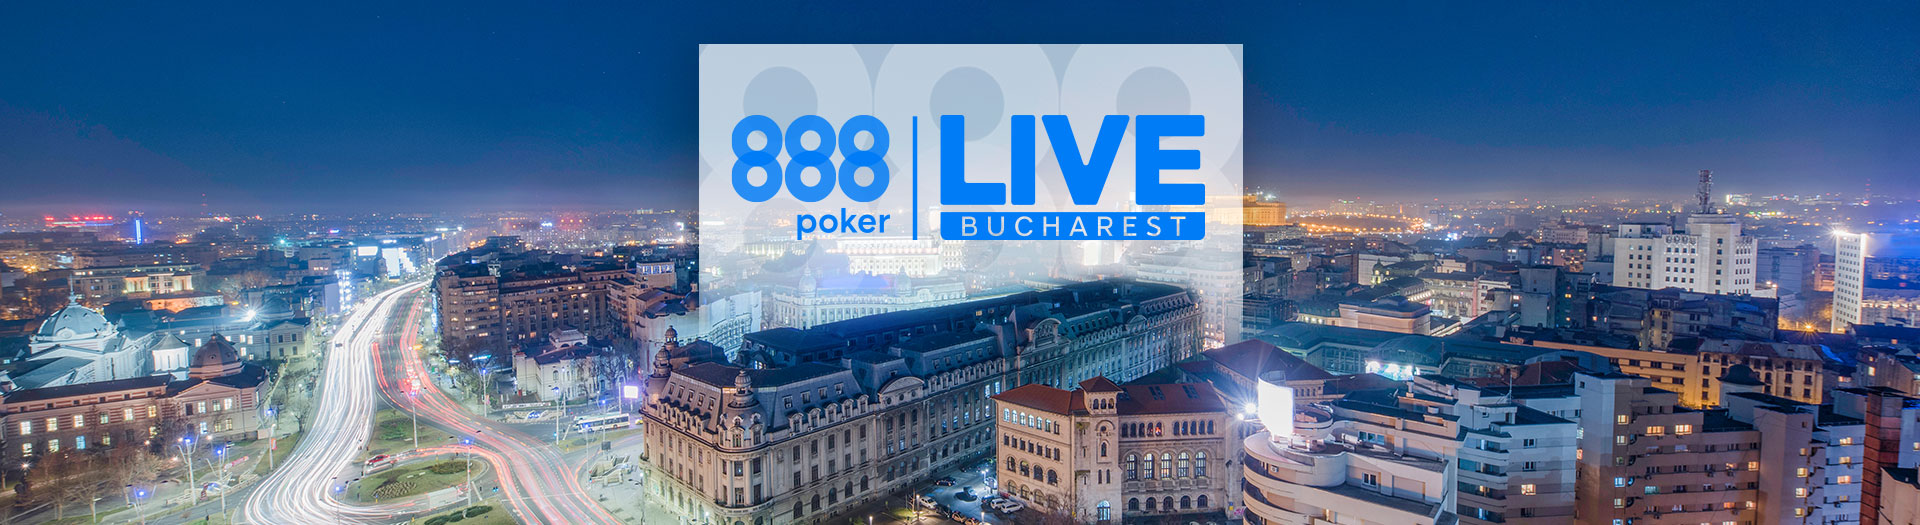 Live-Bucharest-LP-image-1686561106289_tcm1531-590031